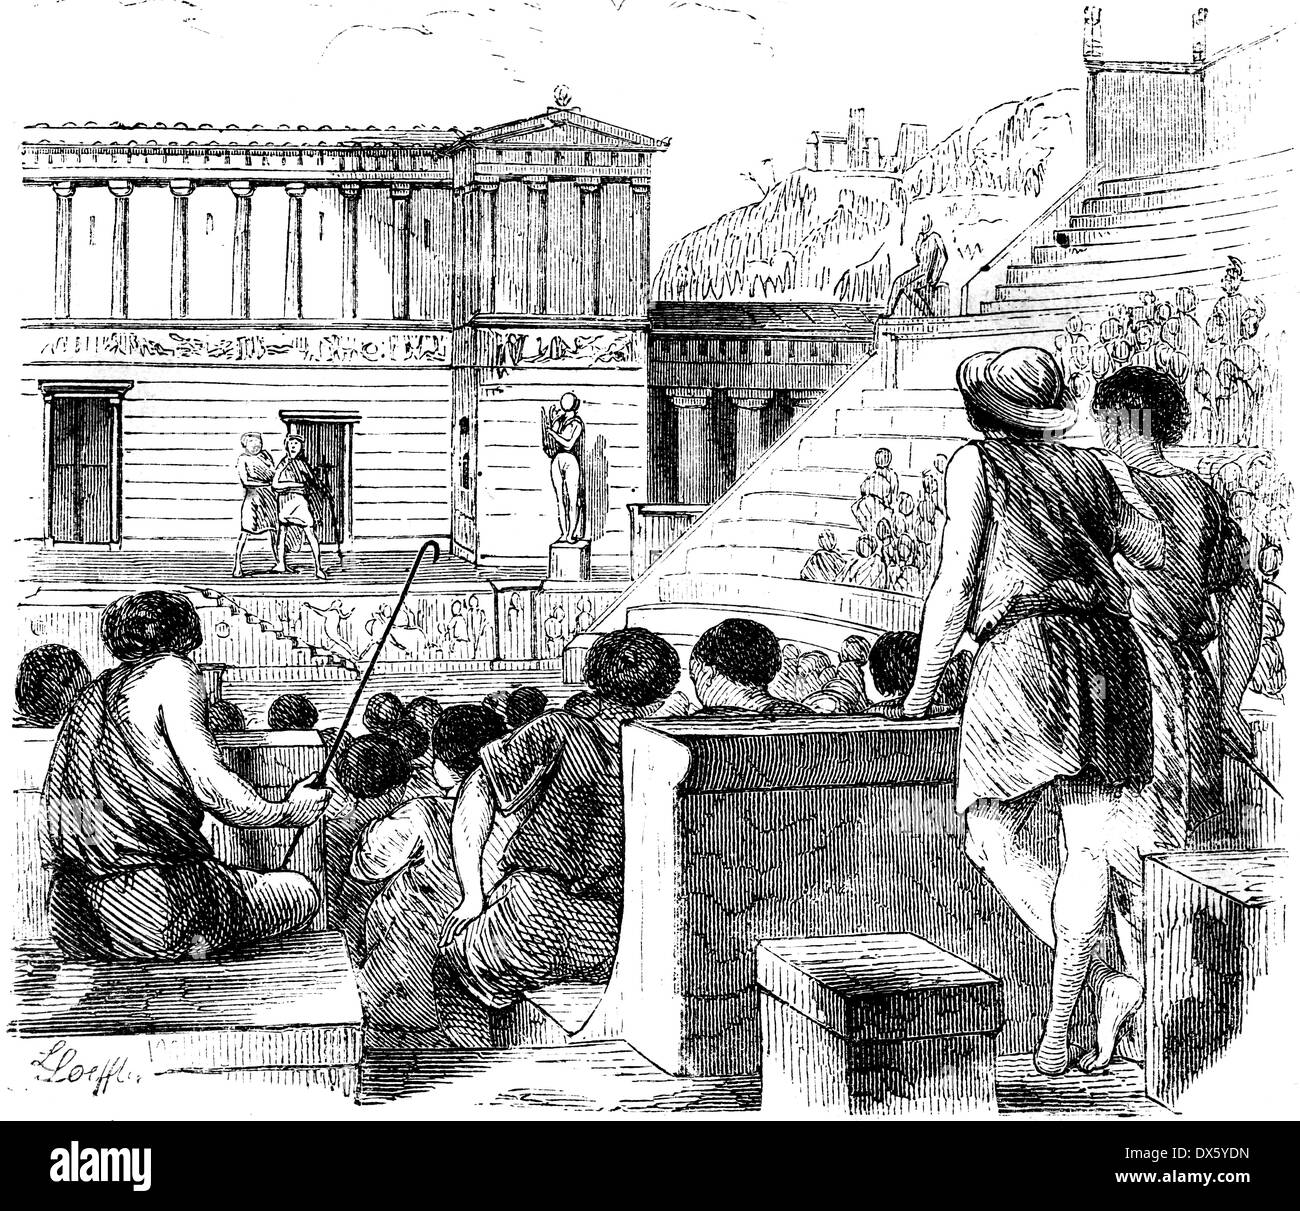 Leistung im antiken griechischen Theater, Illustration aus Buch datiert 1878 Stockfoto